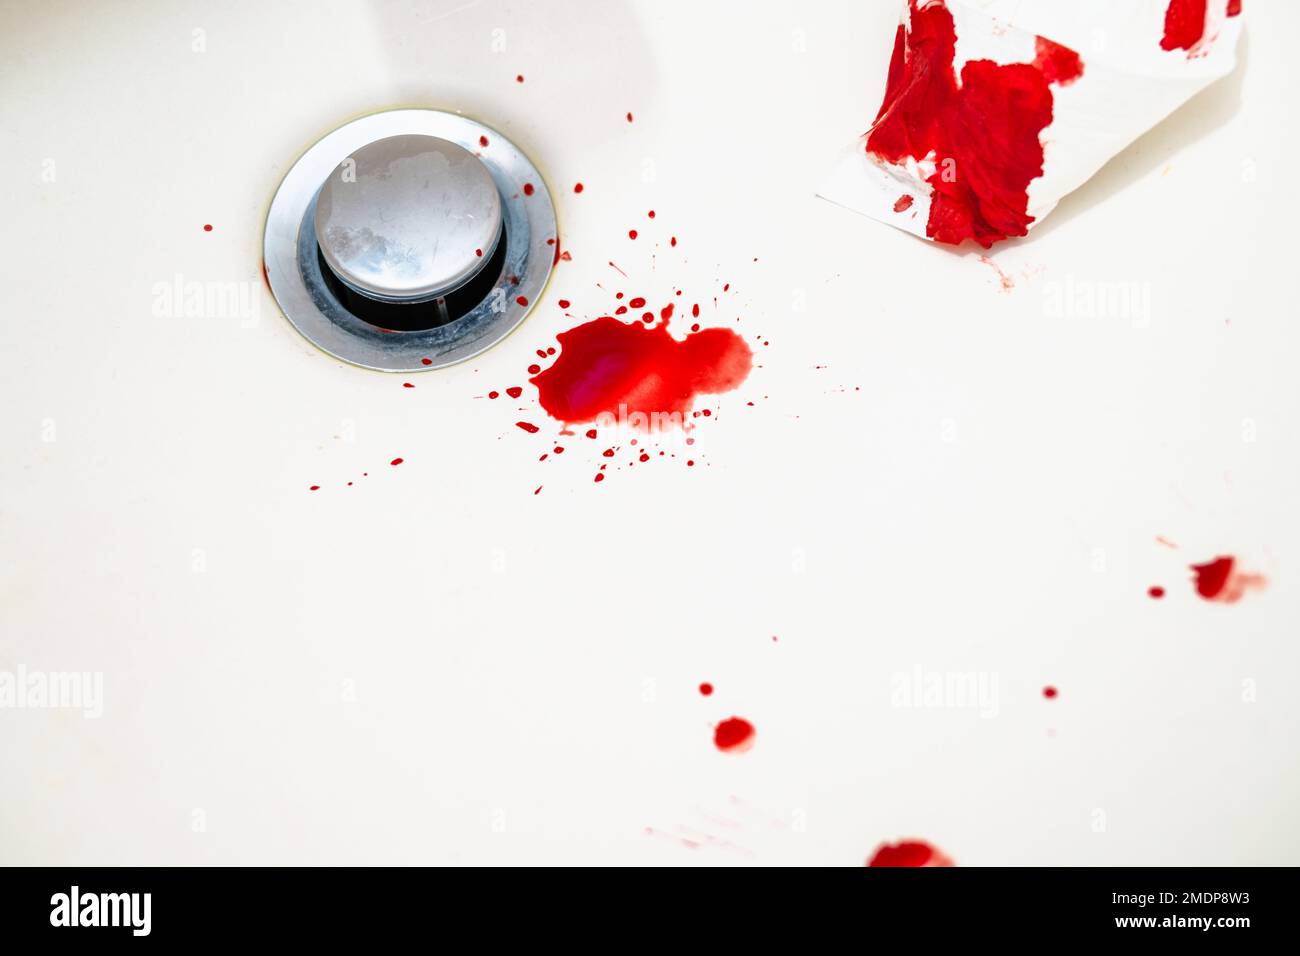 Gocce di sangue rosso nel lavandino bianco del bagno. Sangue reale come tracce e DNA prova di un crimine. Concetto di scena di violenza, omicidio o suicidio. Foto Stock